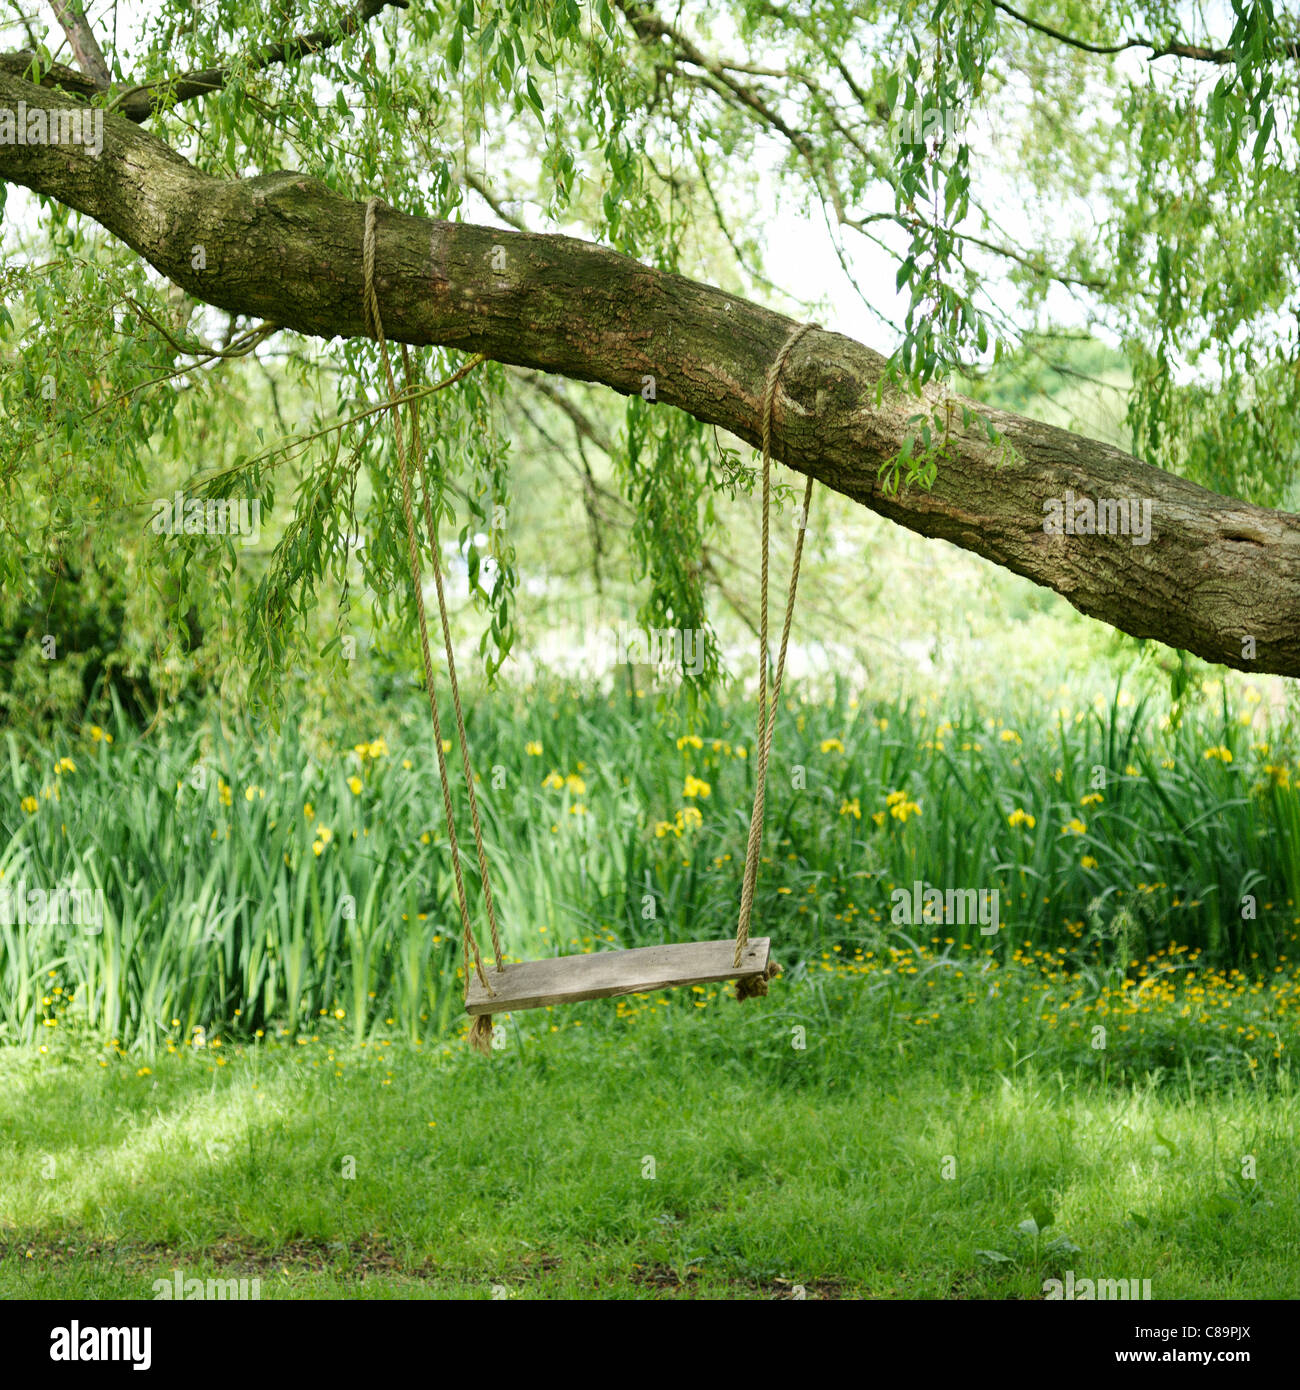 Schaukel hängen von einem Baum in einem Garten Stockfotografie - Alamy